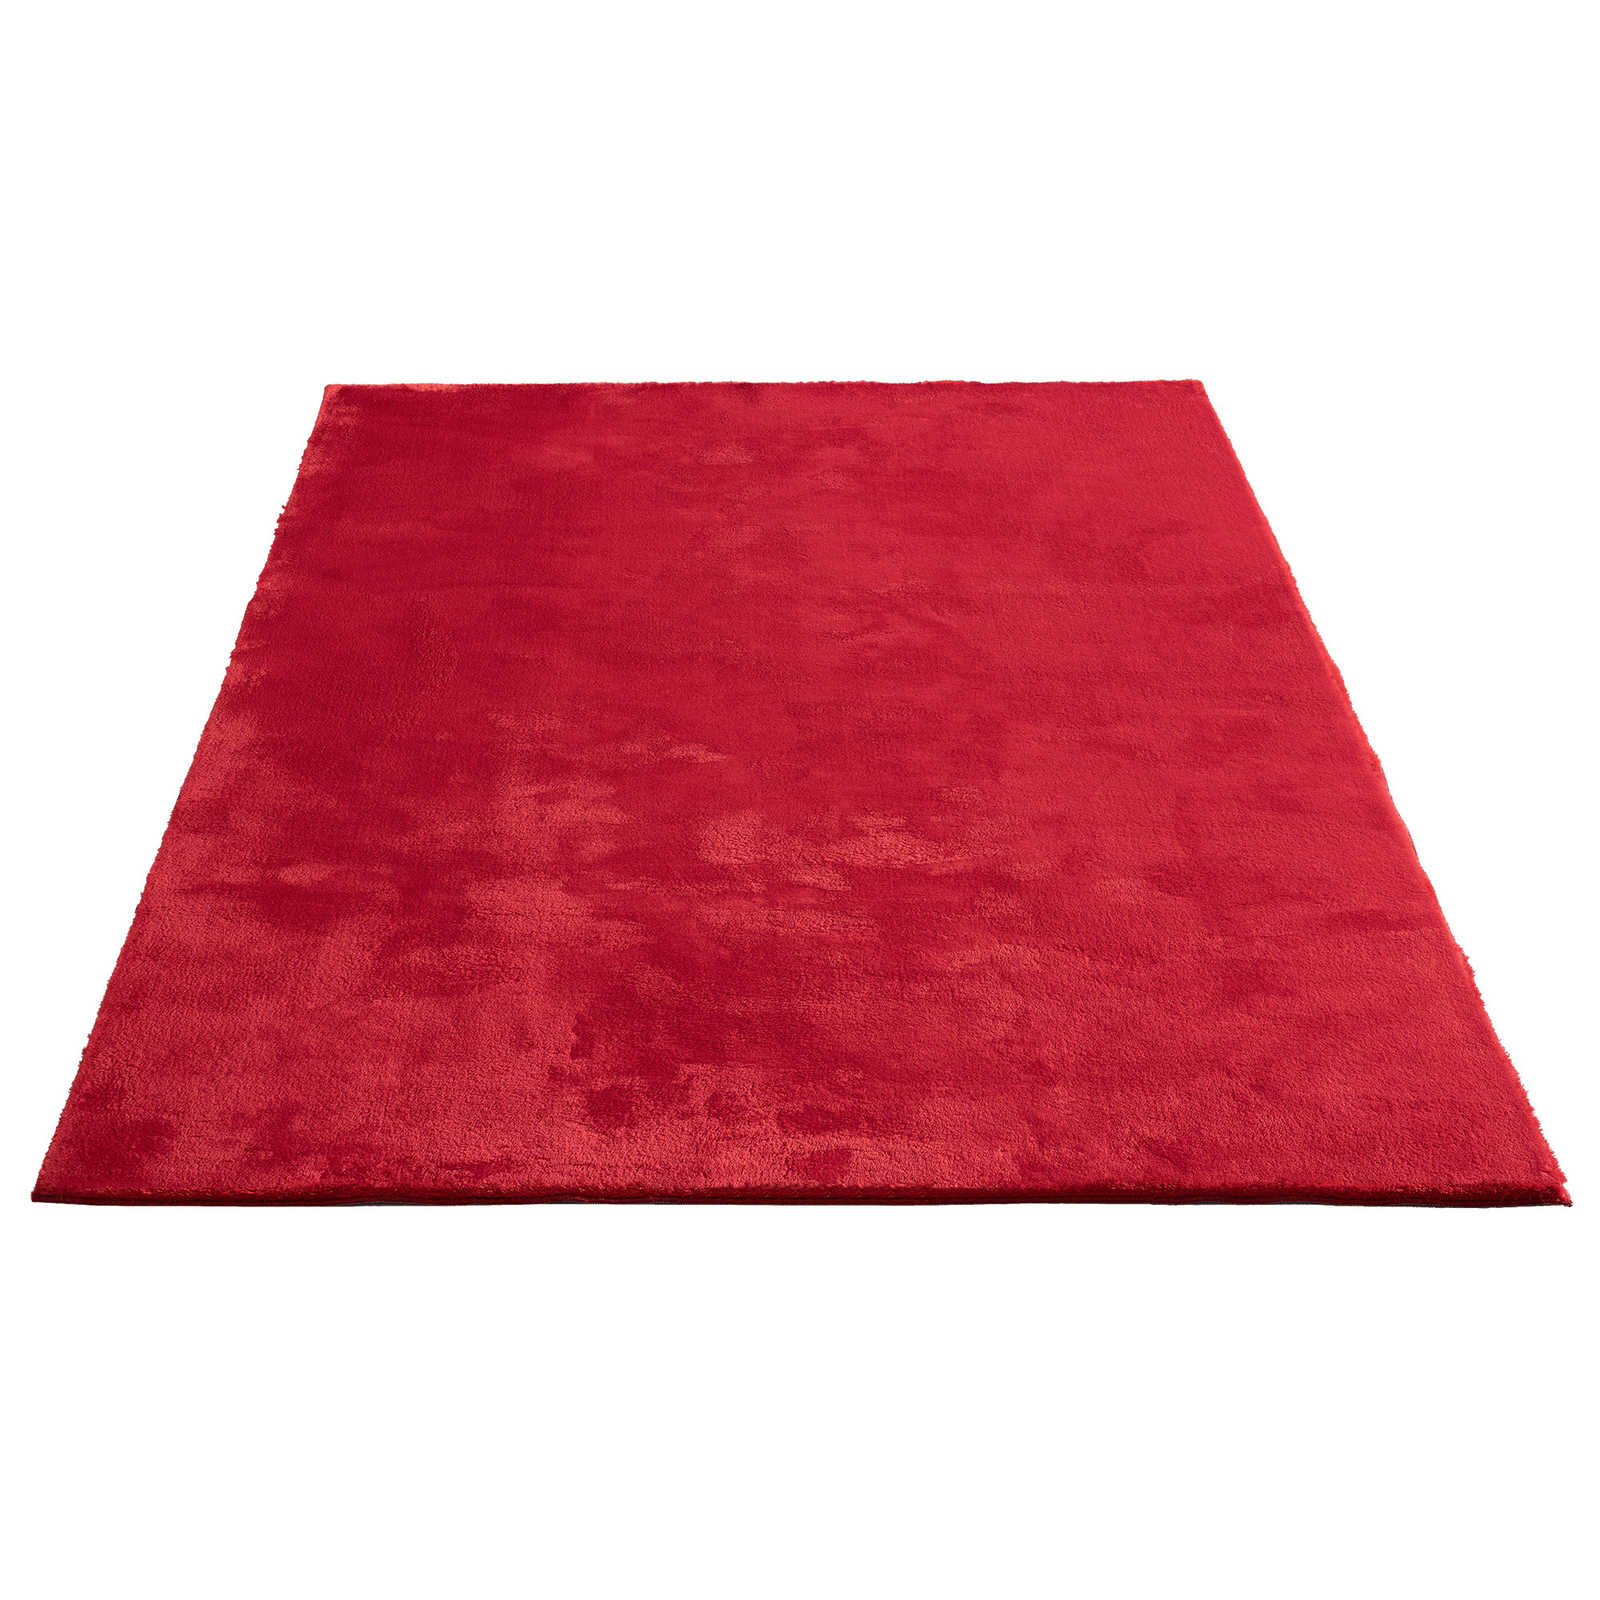 Extra zacht hoogpolig tapijt in rood - 290 x 200 cm
